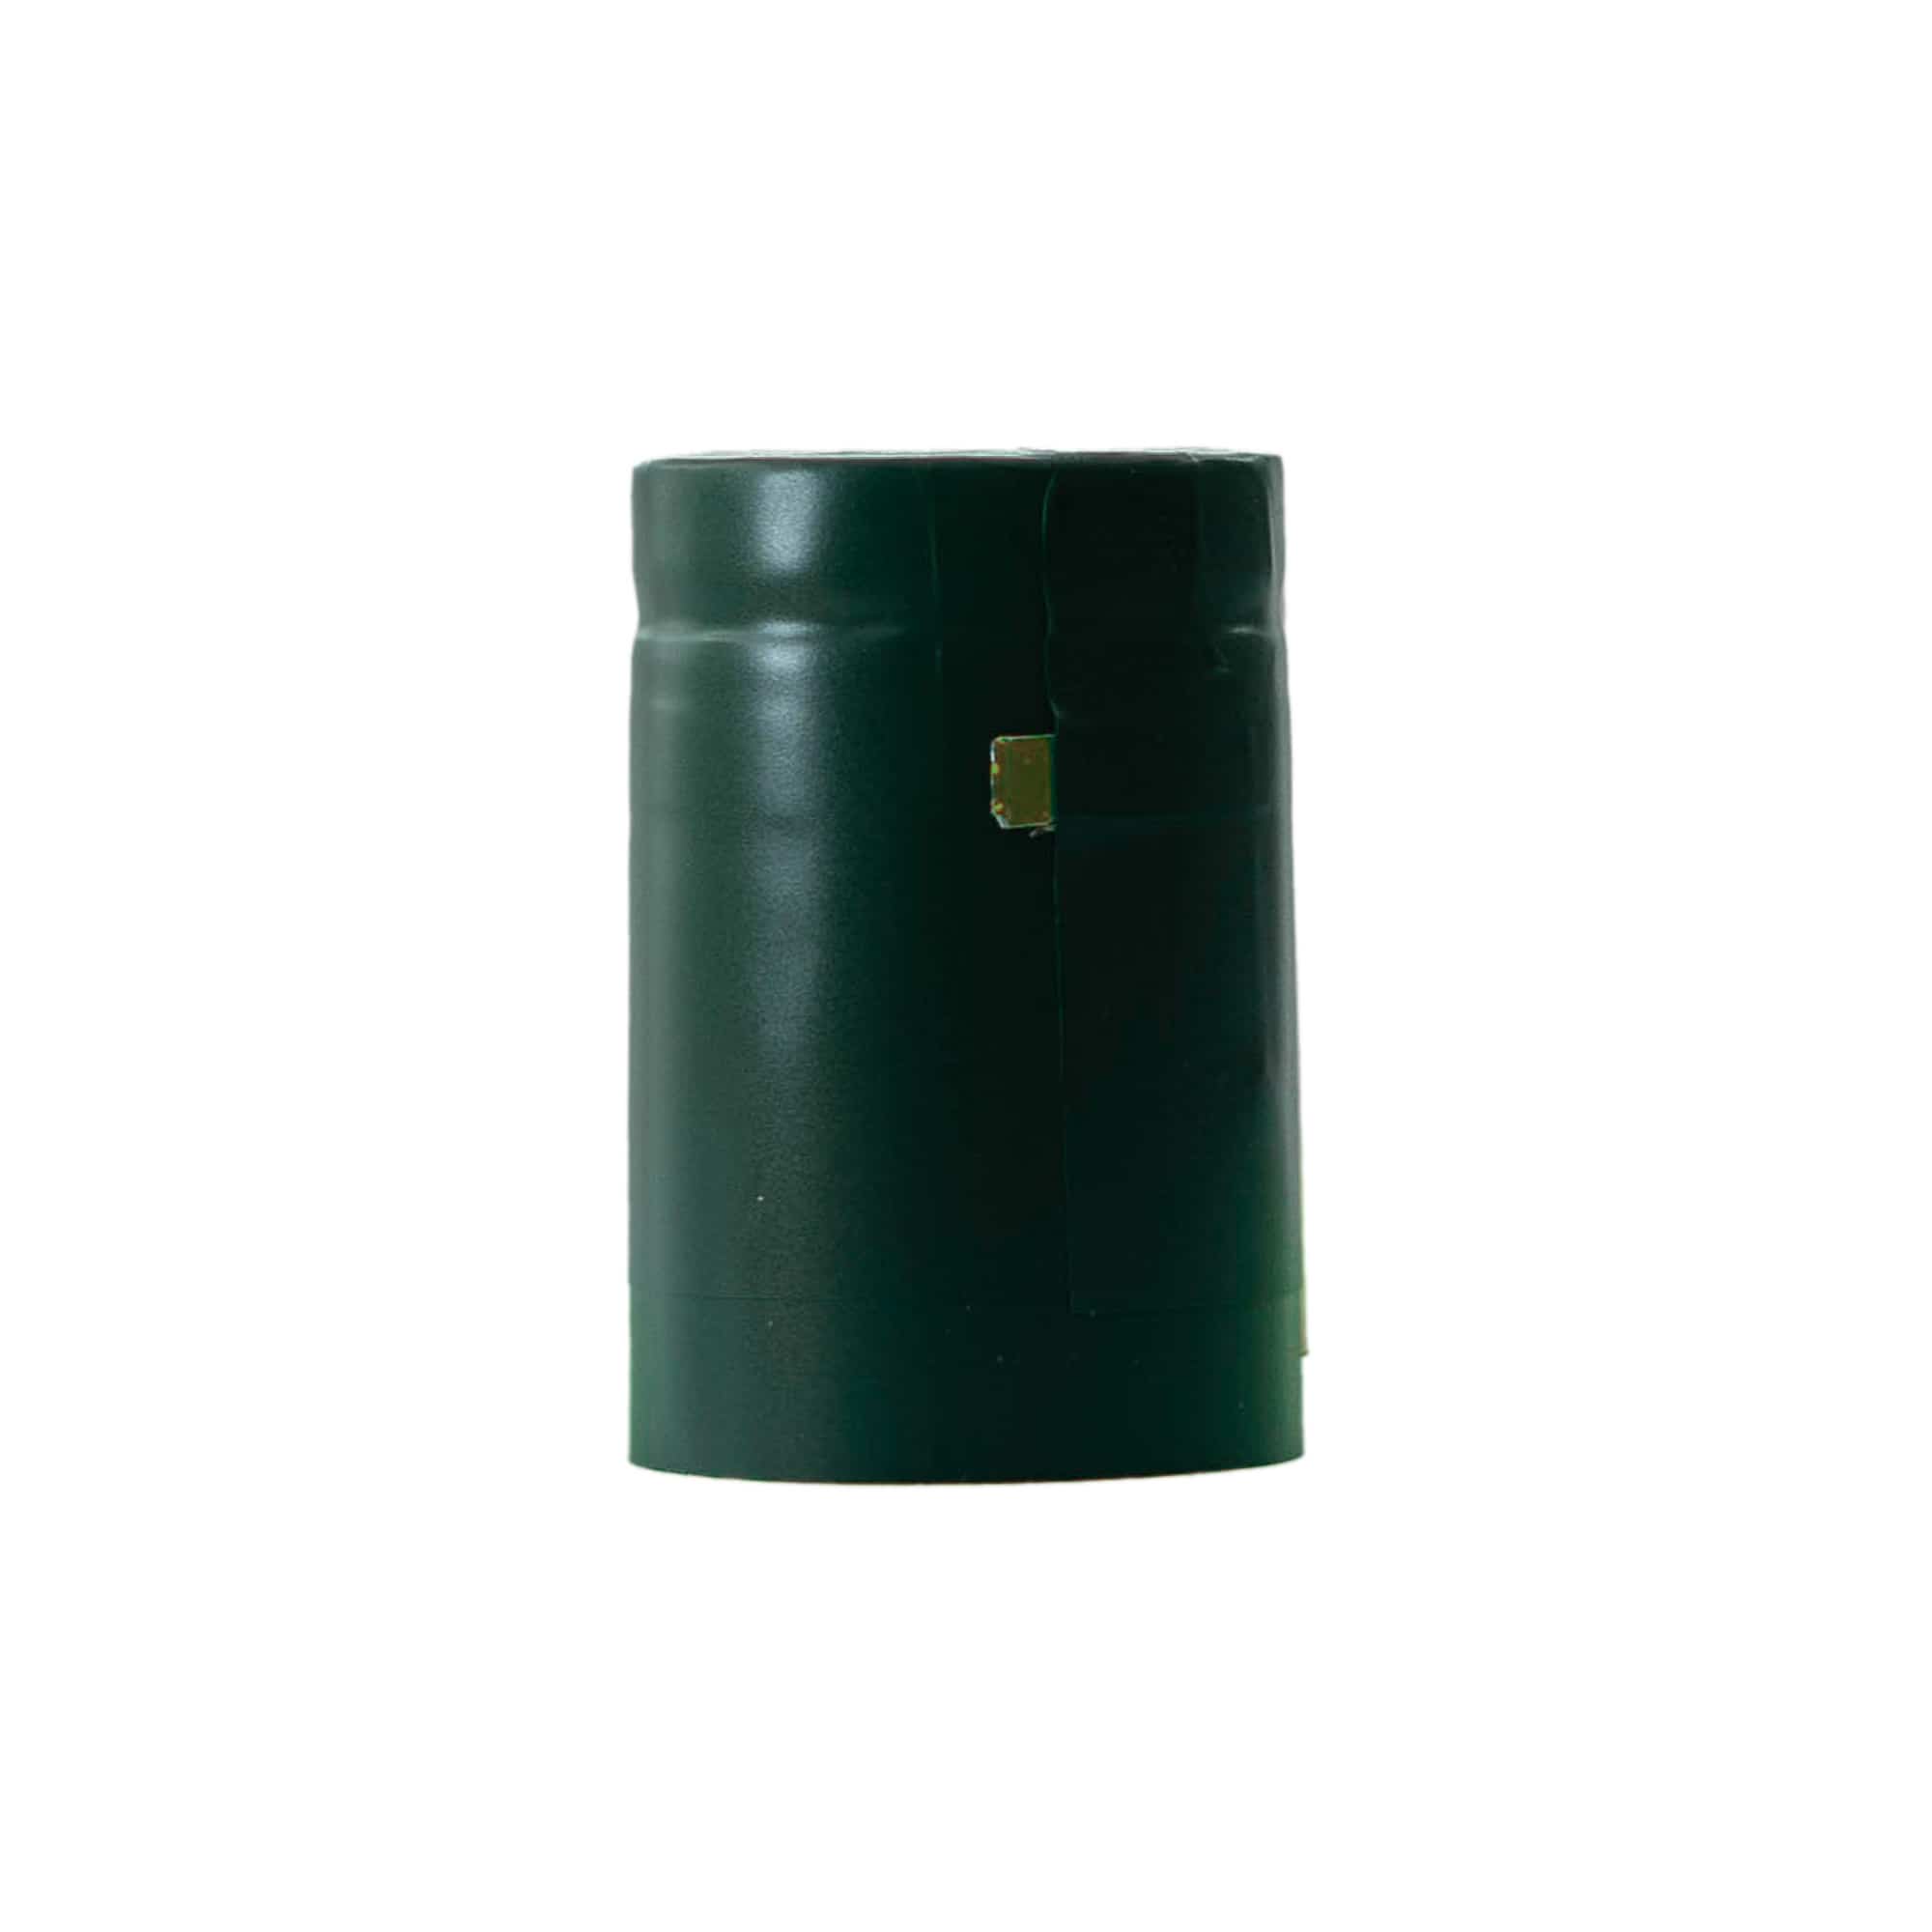 Krympkapsel 32x41, PVC-plast, smaragdgrön